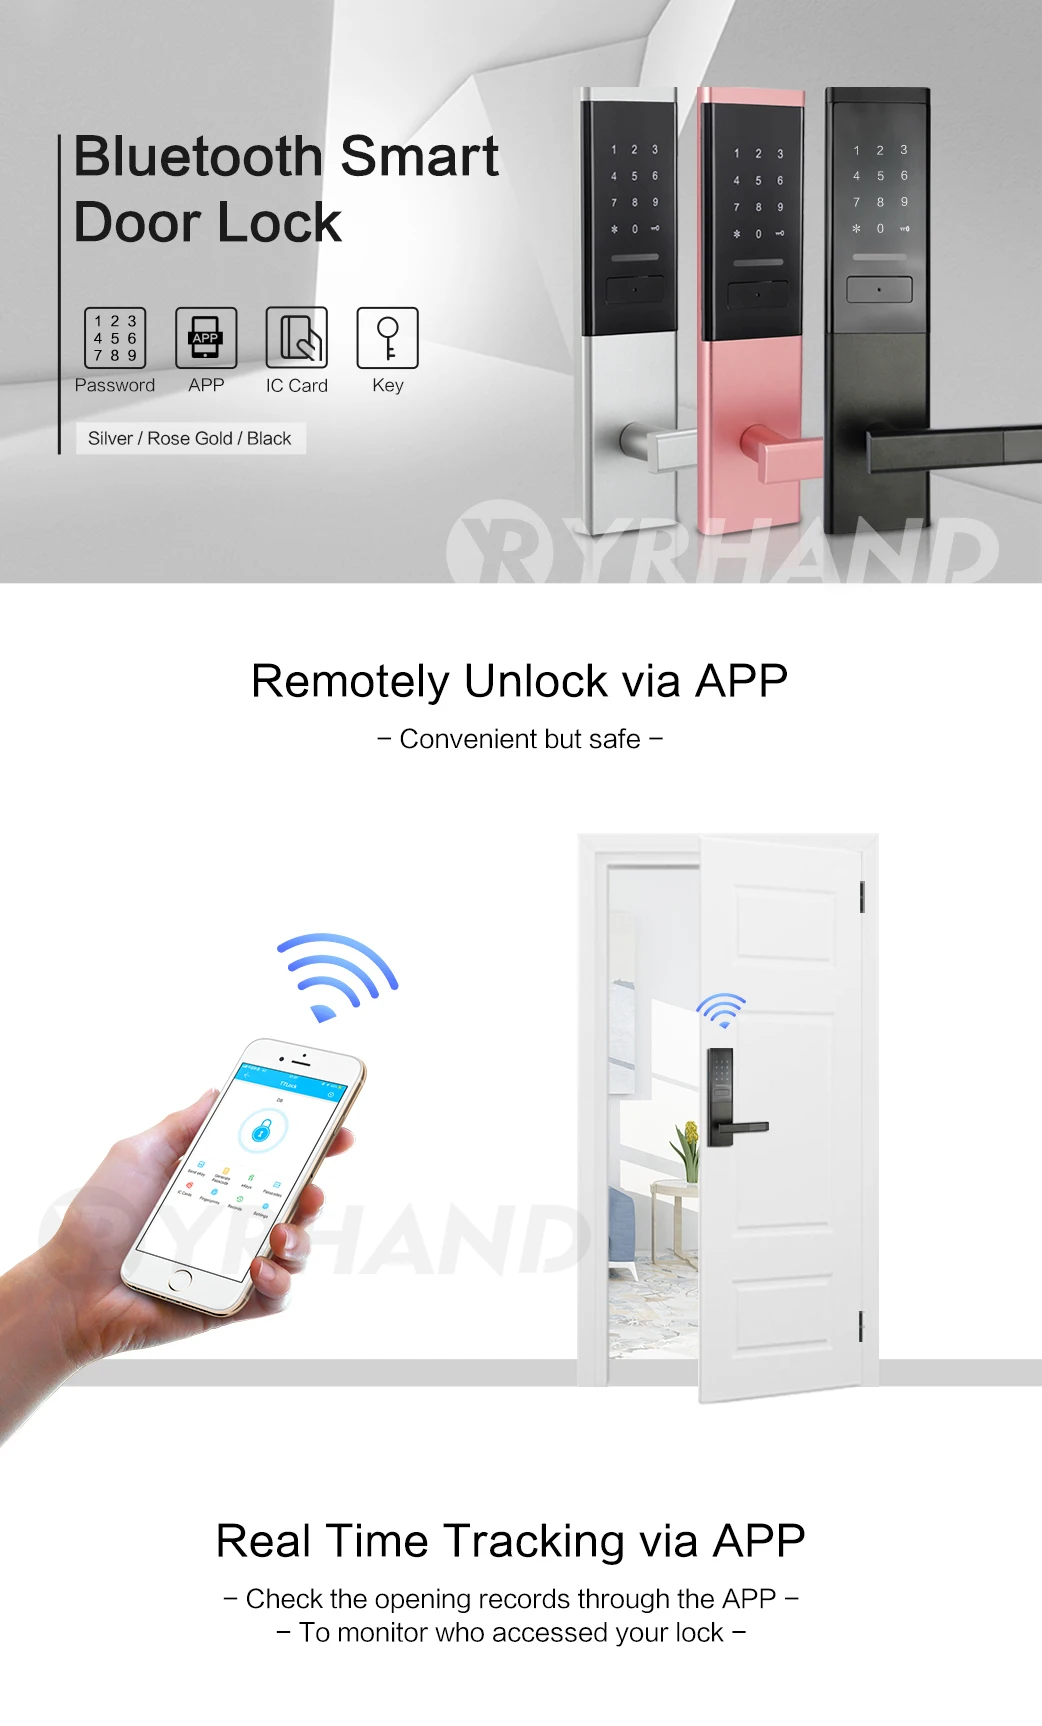 Безопасный электронный дверной замок, приложение wifi умный сенсорный экран замок, цифровой код клавиатуры Засов для дома гостиницы квартиры